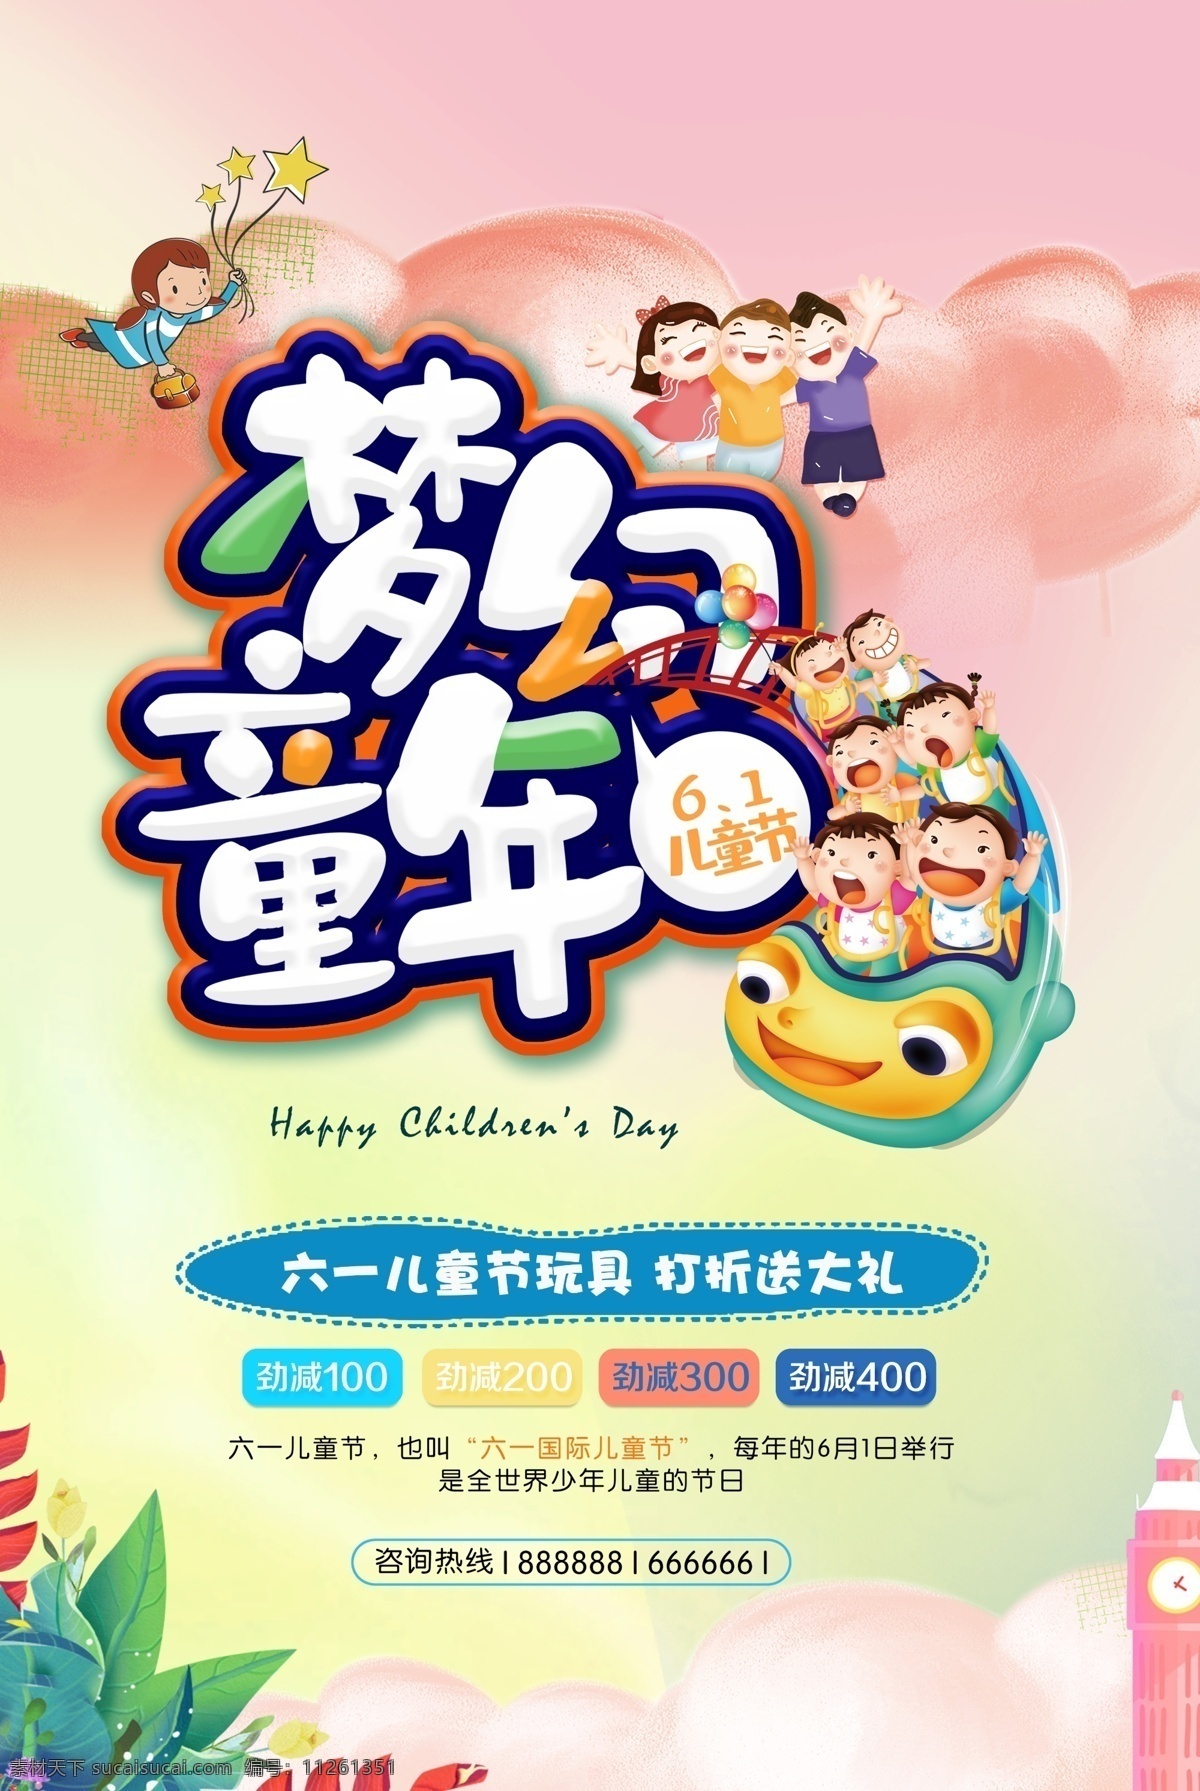 梦幻童年 61儿童节 海报 纯真年代 童年快乐 节日快乐 卡通风格 招贴设计